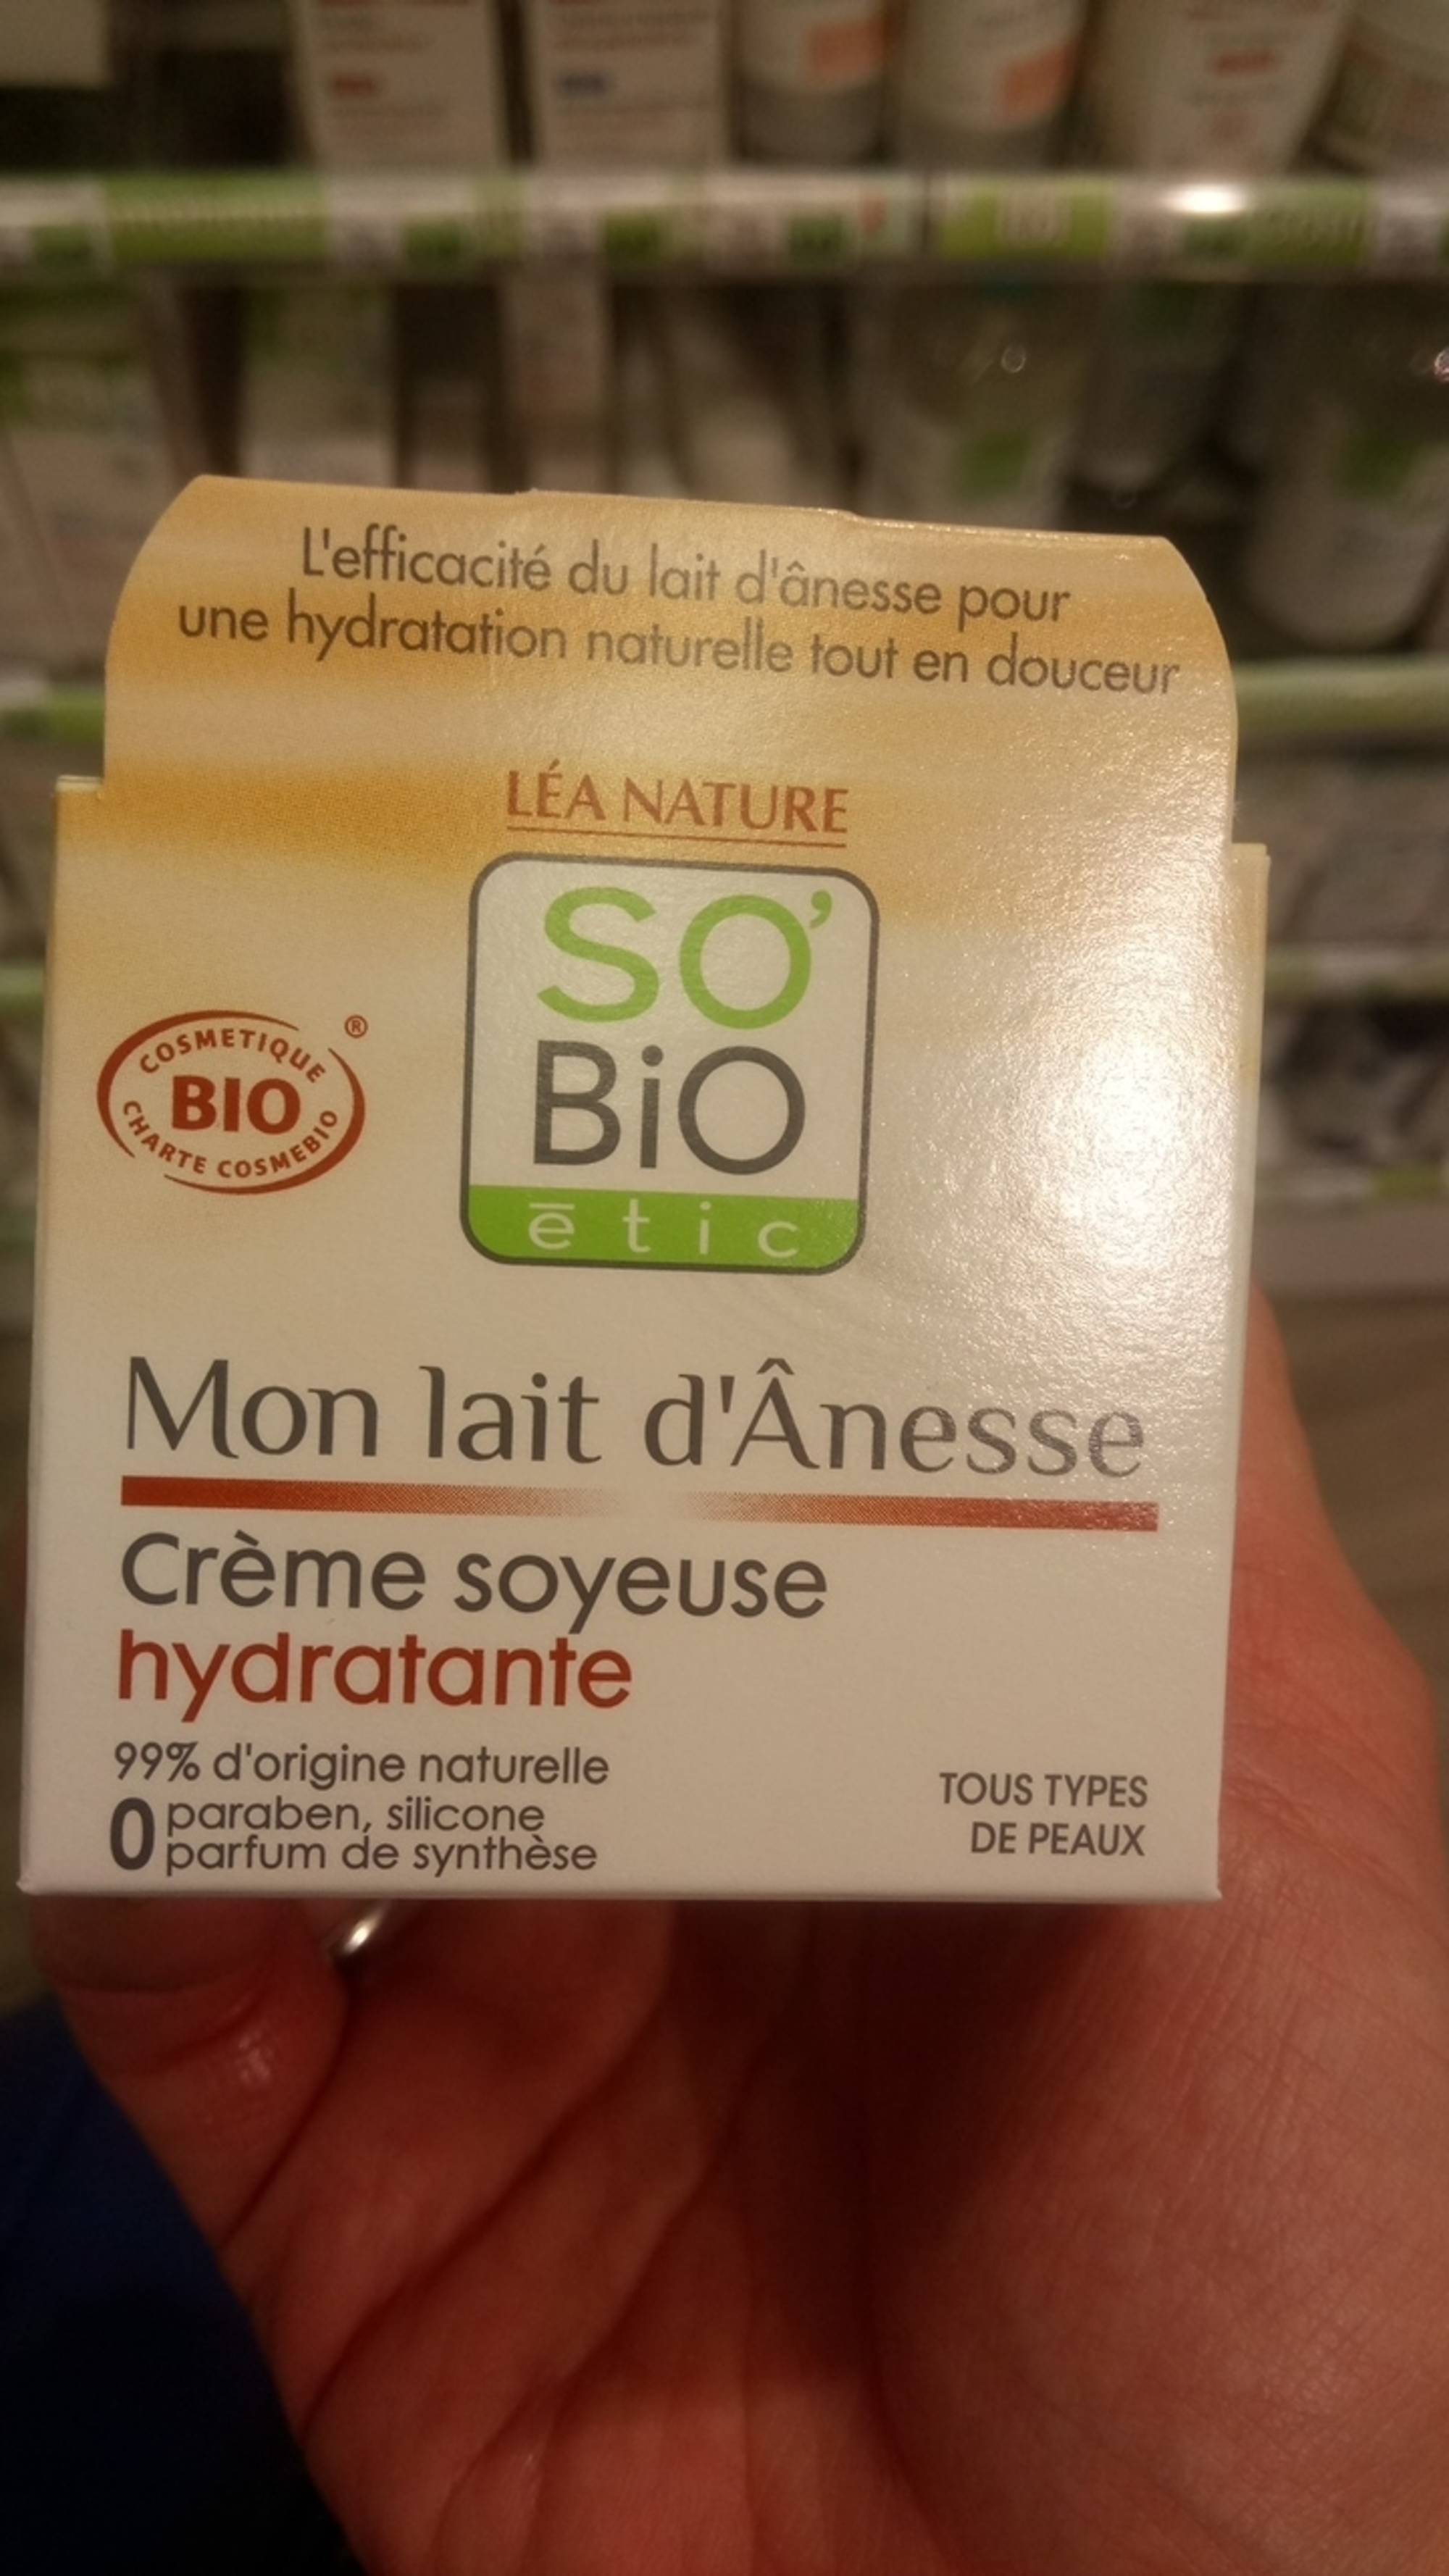 SO'BIO ÉTIC - Mon lait d'ânesse - Crème soyeuse hydratante bio